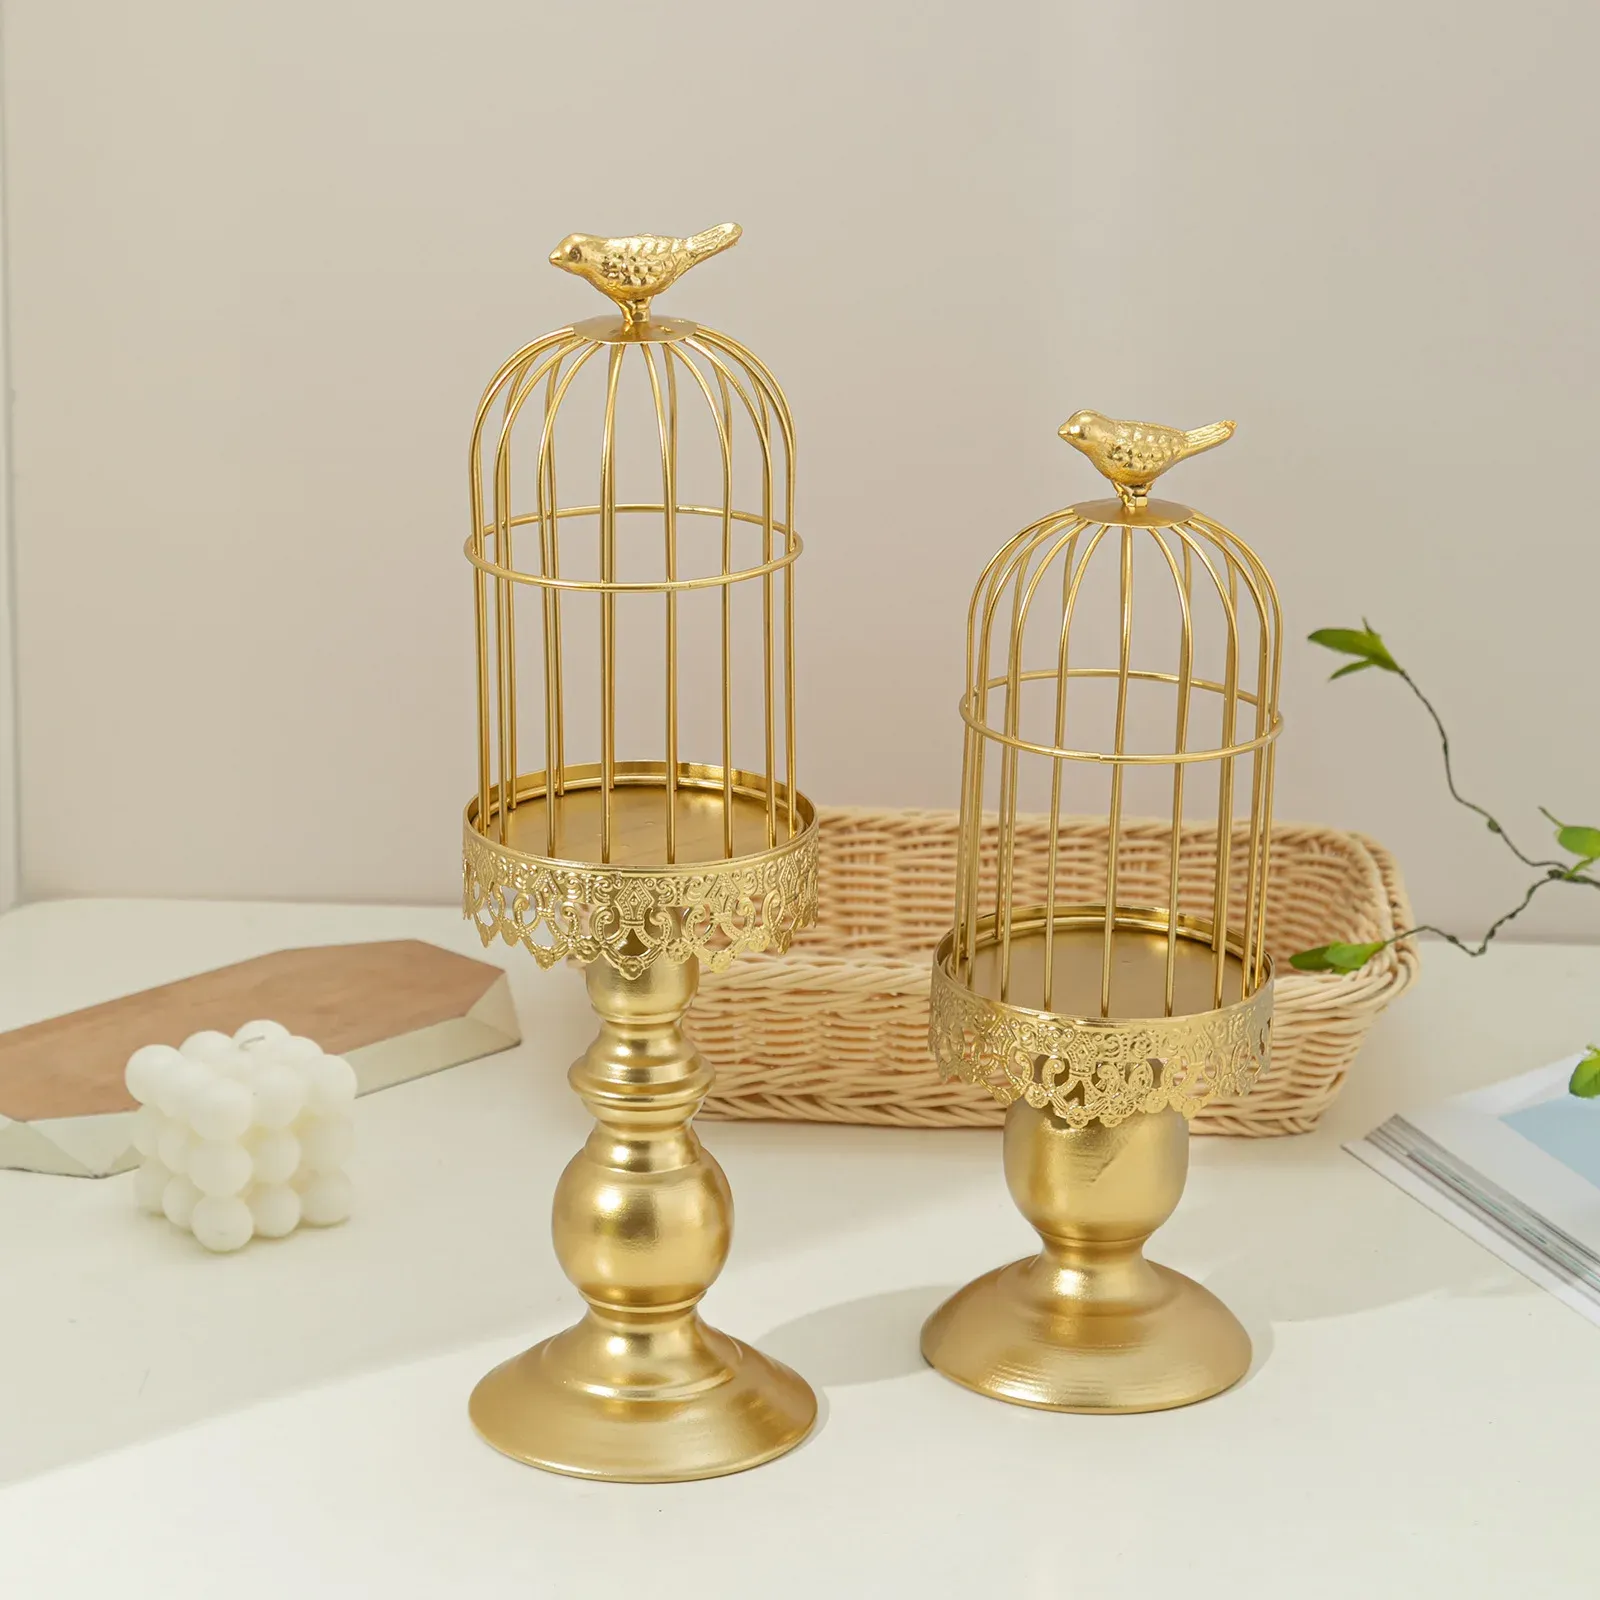 Halter Vintage Vogel Käfig Kerzenhalter geschweißt, um alte handwerksgeschnitzte Muster dekorative Metallhandwerk Kerze zu machen